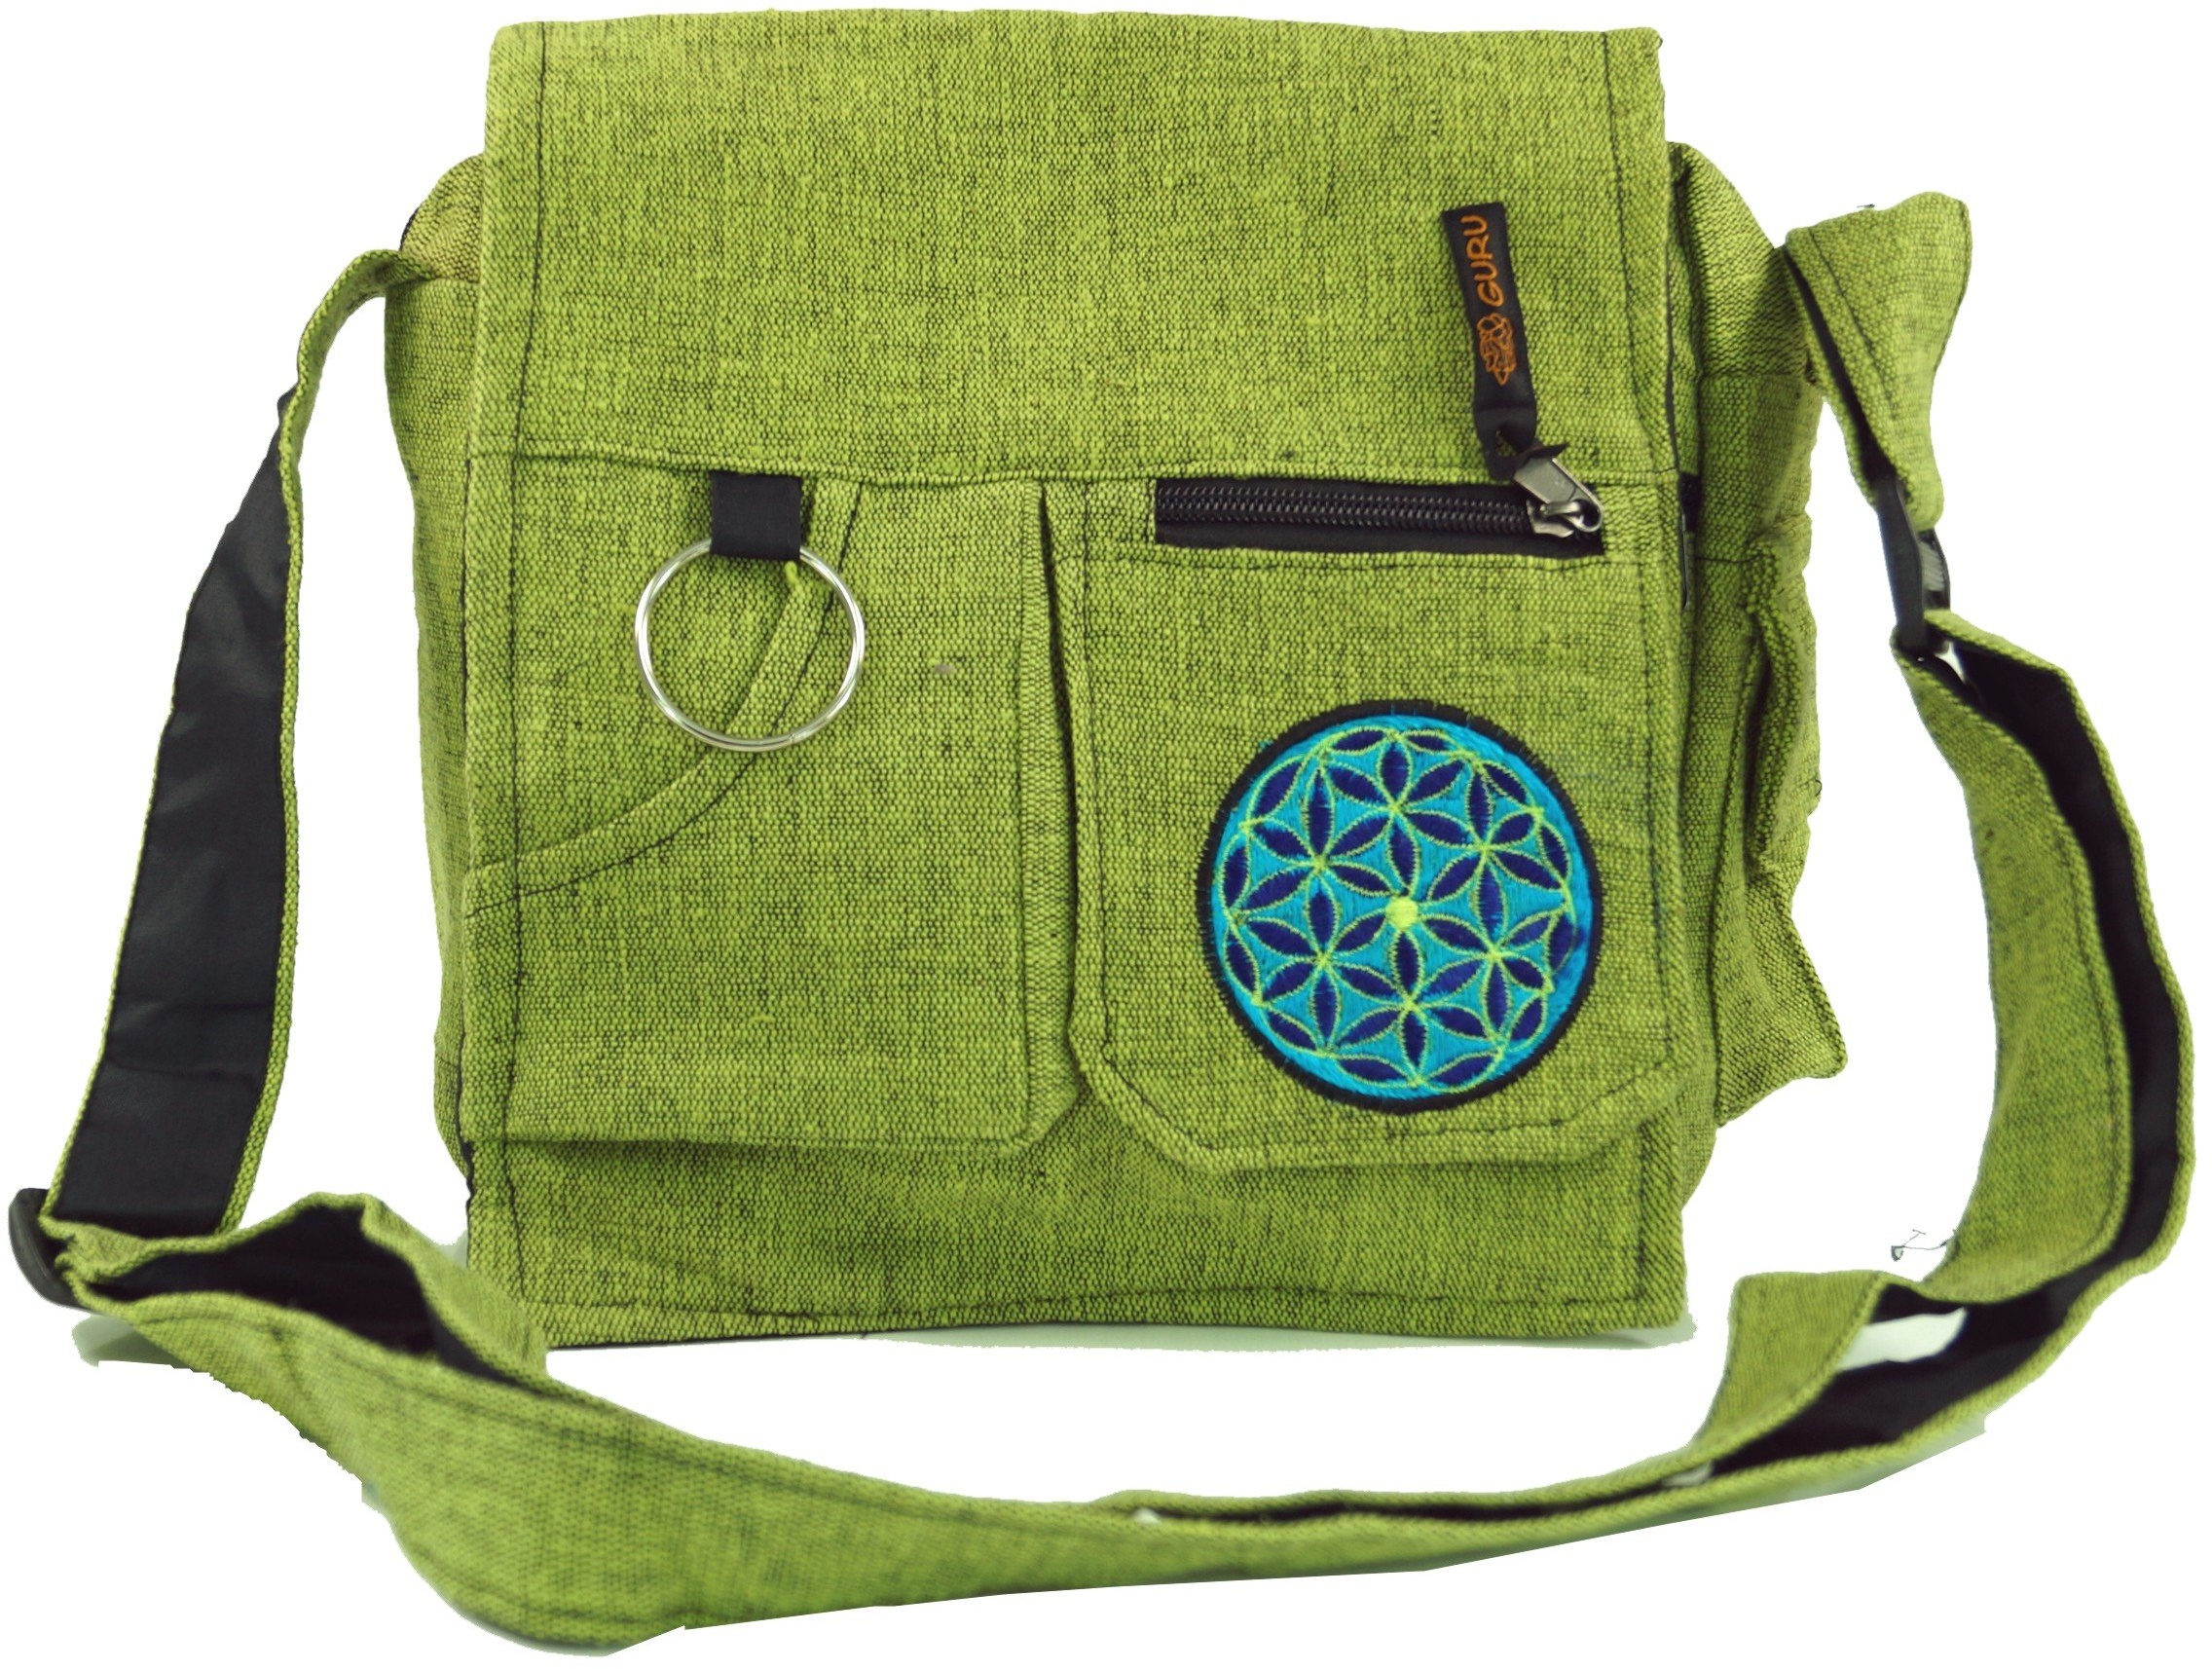 GURU SHOP Schultertasche, Hippie Tasche - Grün, Herren/Damen, Baumwolle, Size:One Size, 25x25x7 cm, Alternative Umhängetasche, Handtasche aus Stoff - Einheitsgröße